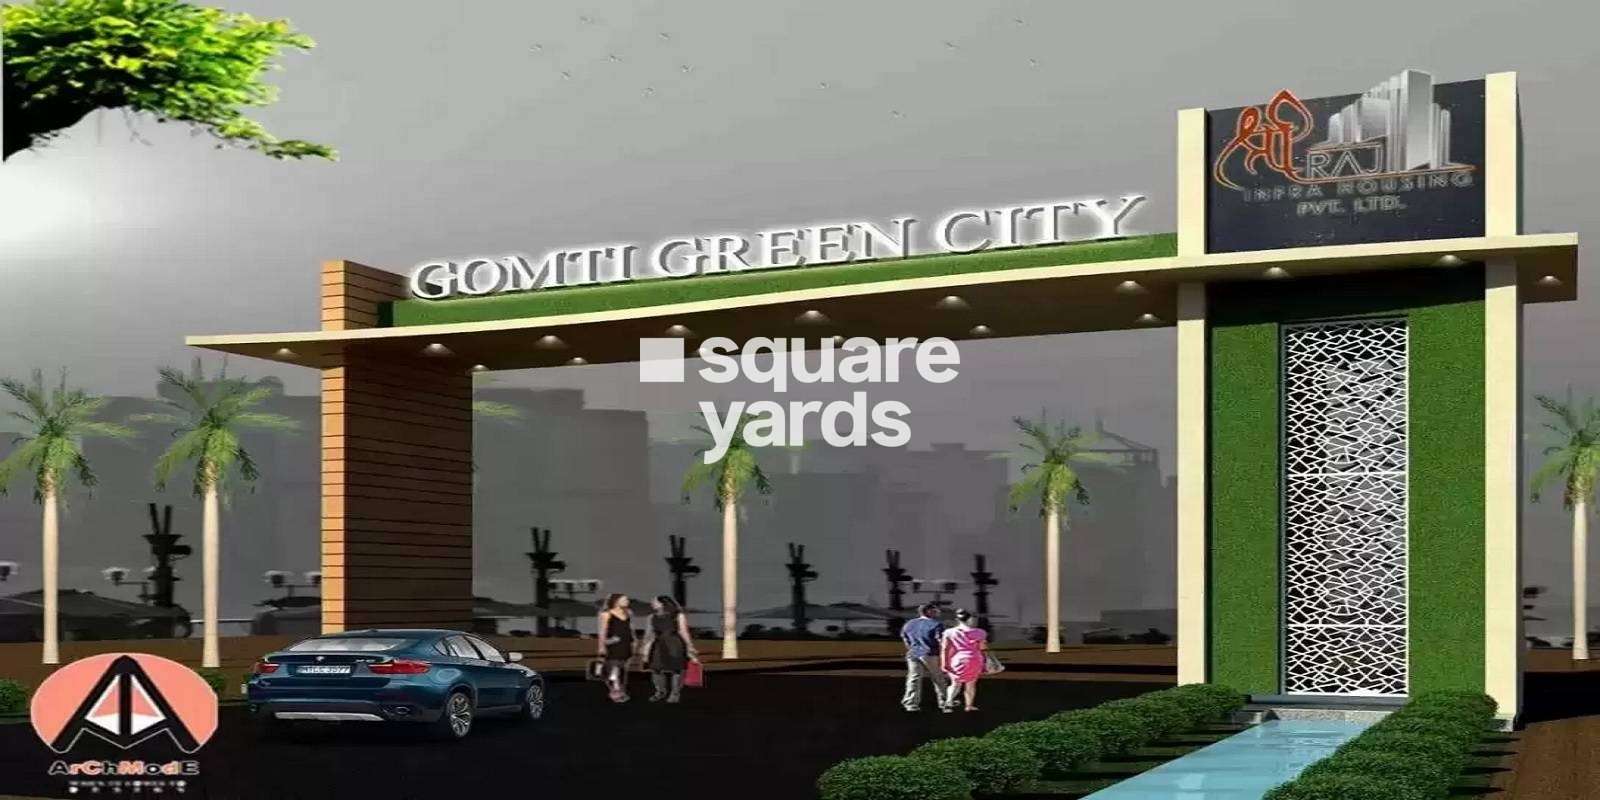 Shree Raj Gomti Green City Cover Image